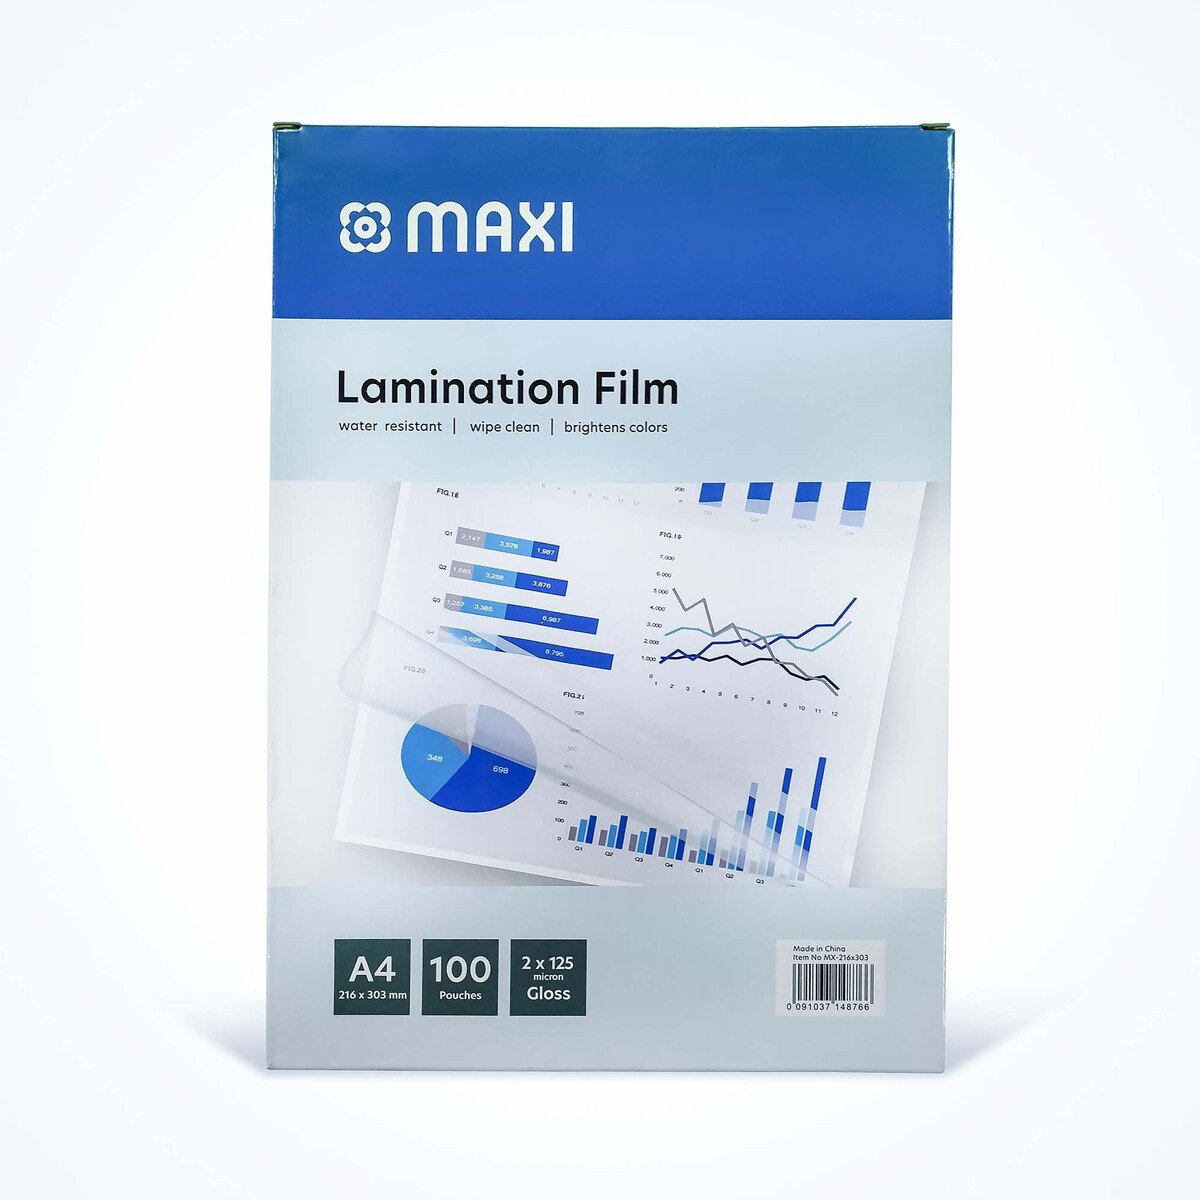 Maxi 100 Pouches A4 Laminating Film, 216 x 303 mm